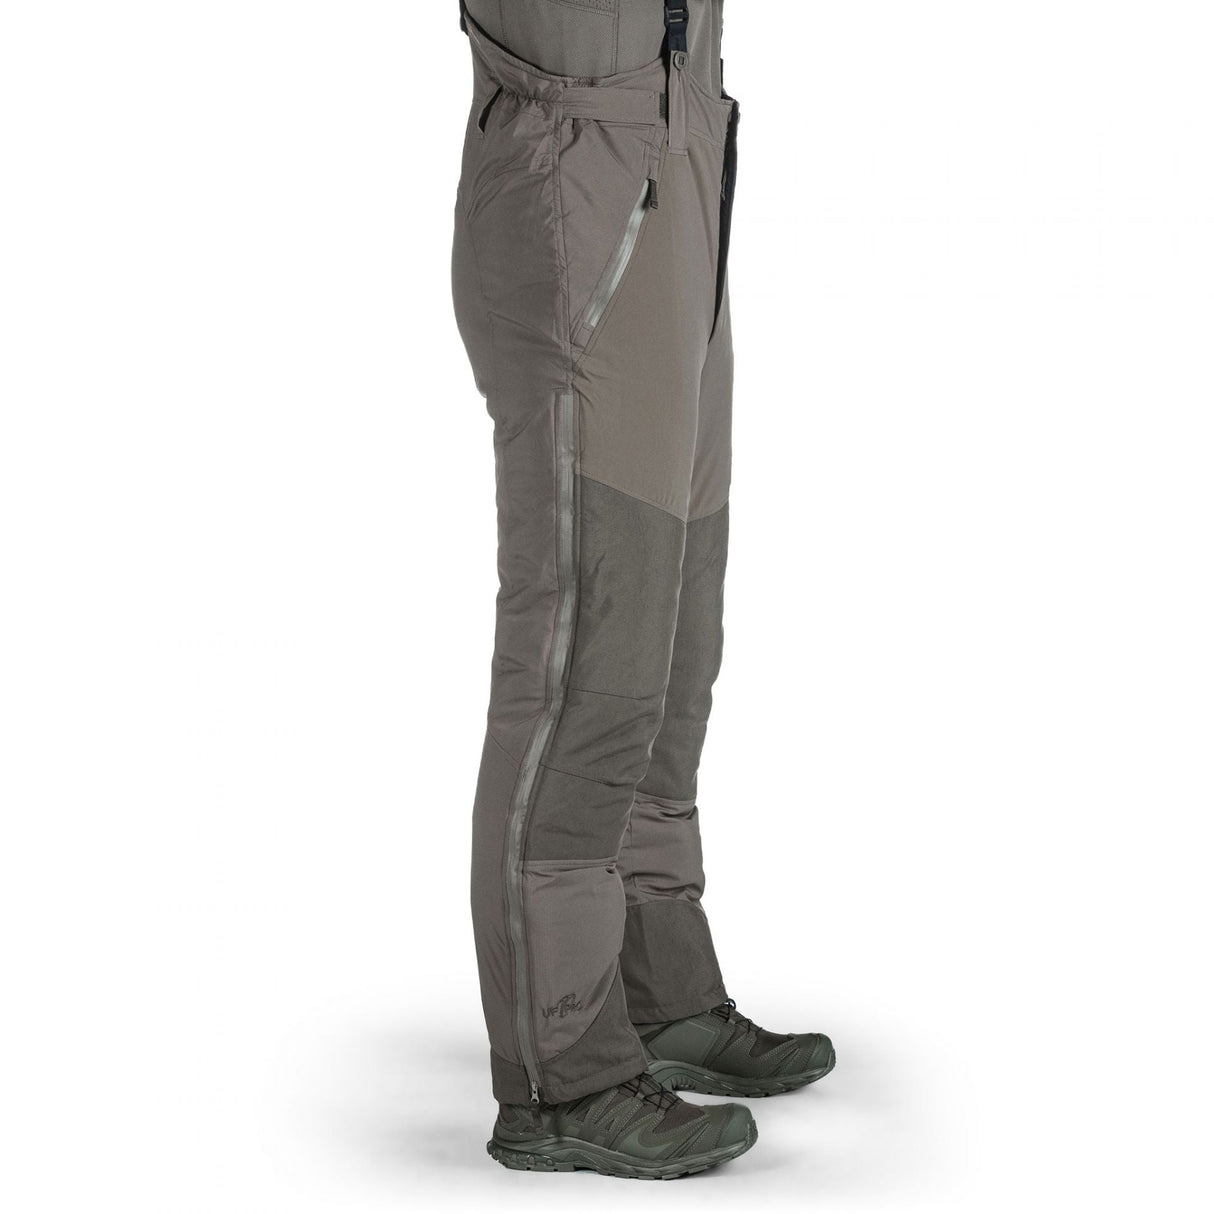 Delta OL 3.0 Gear: Water-repellent design, YKK® side zippers, Cordura® reinforcements.